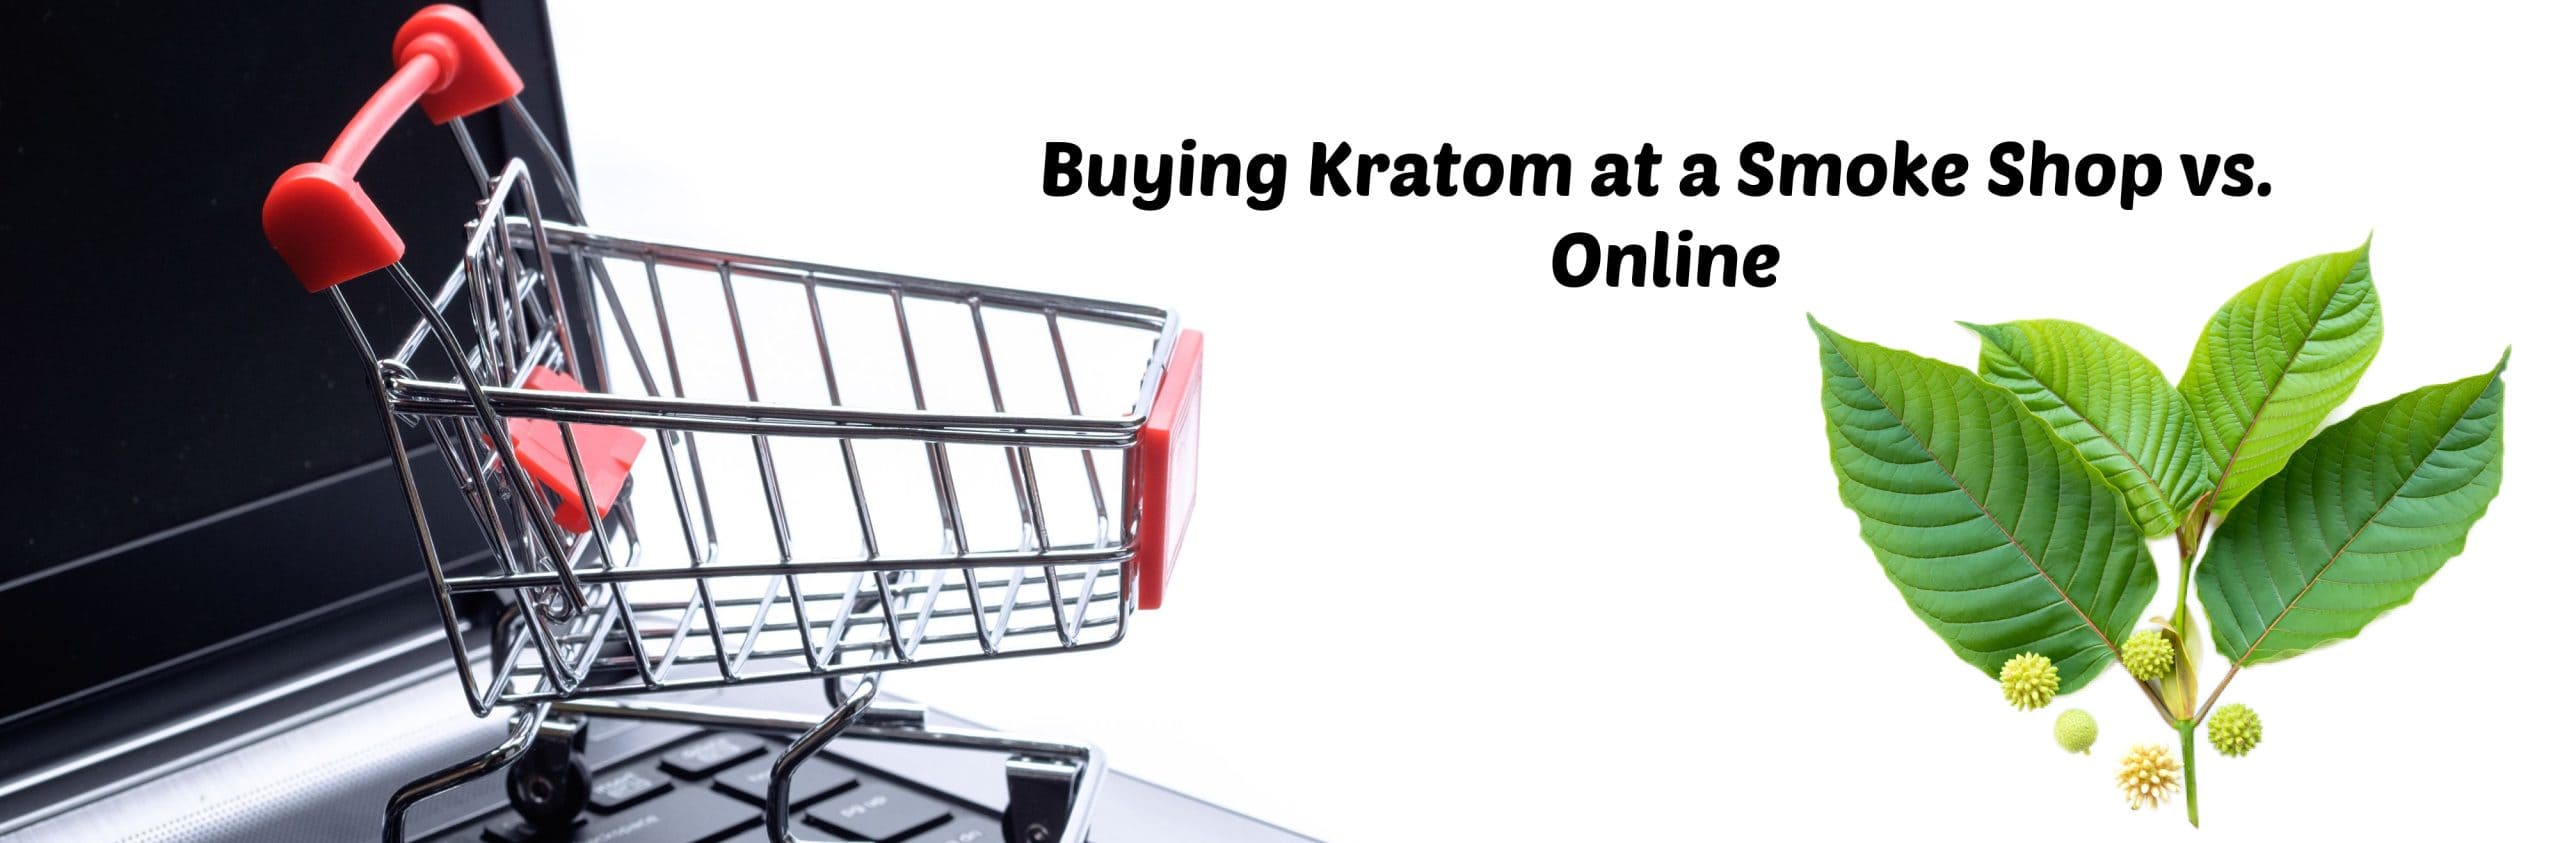 image of buying kratom at smoke shop vs online